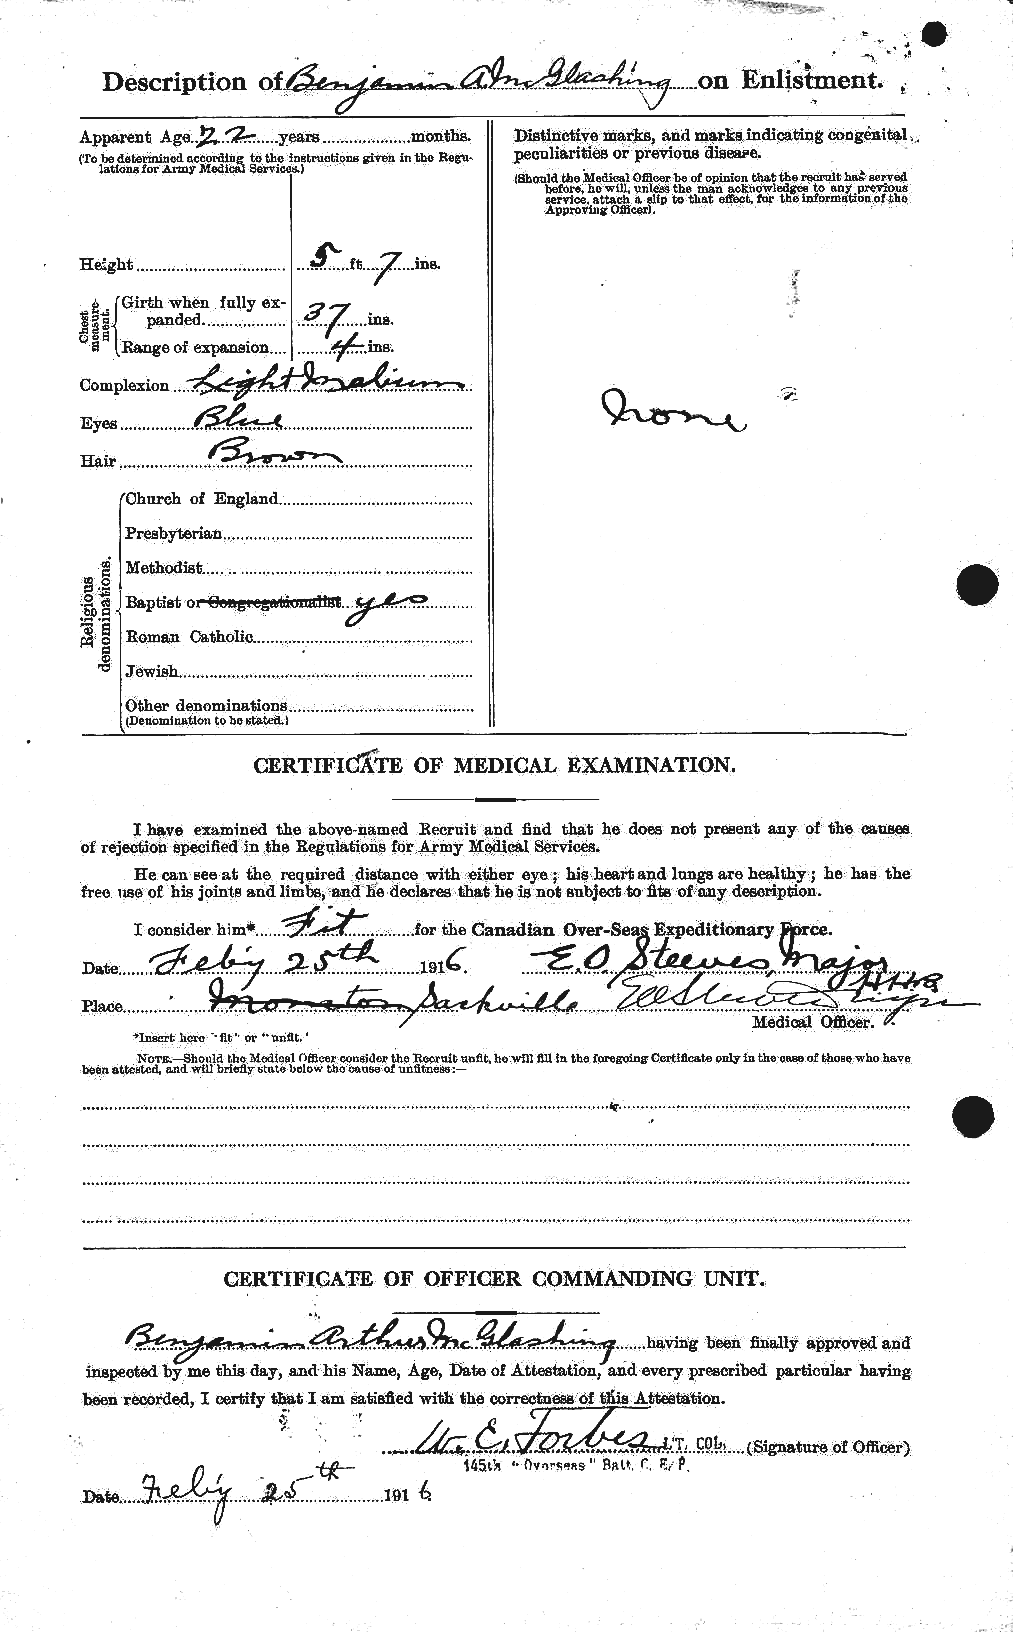 Dossiers du Personnel de la Première Guerre mondiale - CEC 528424b